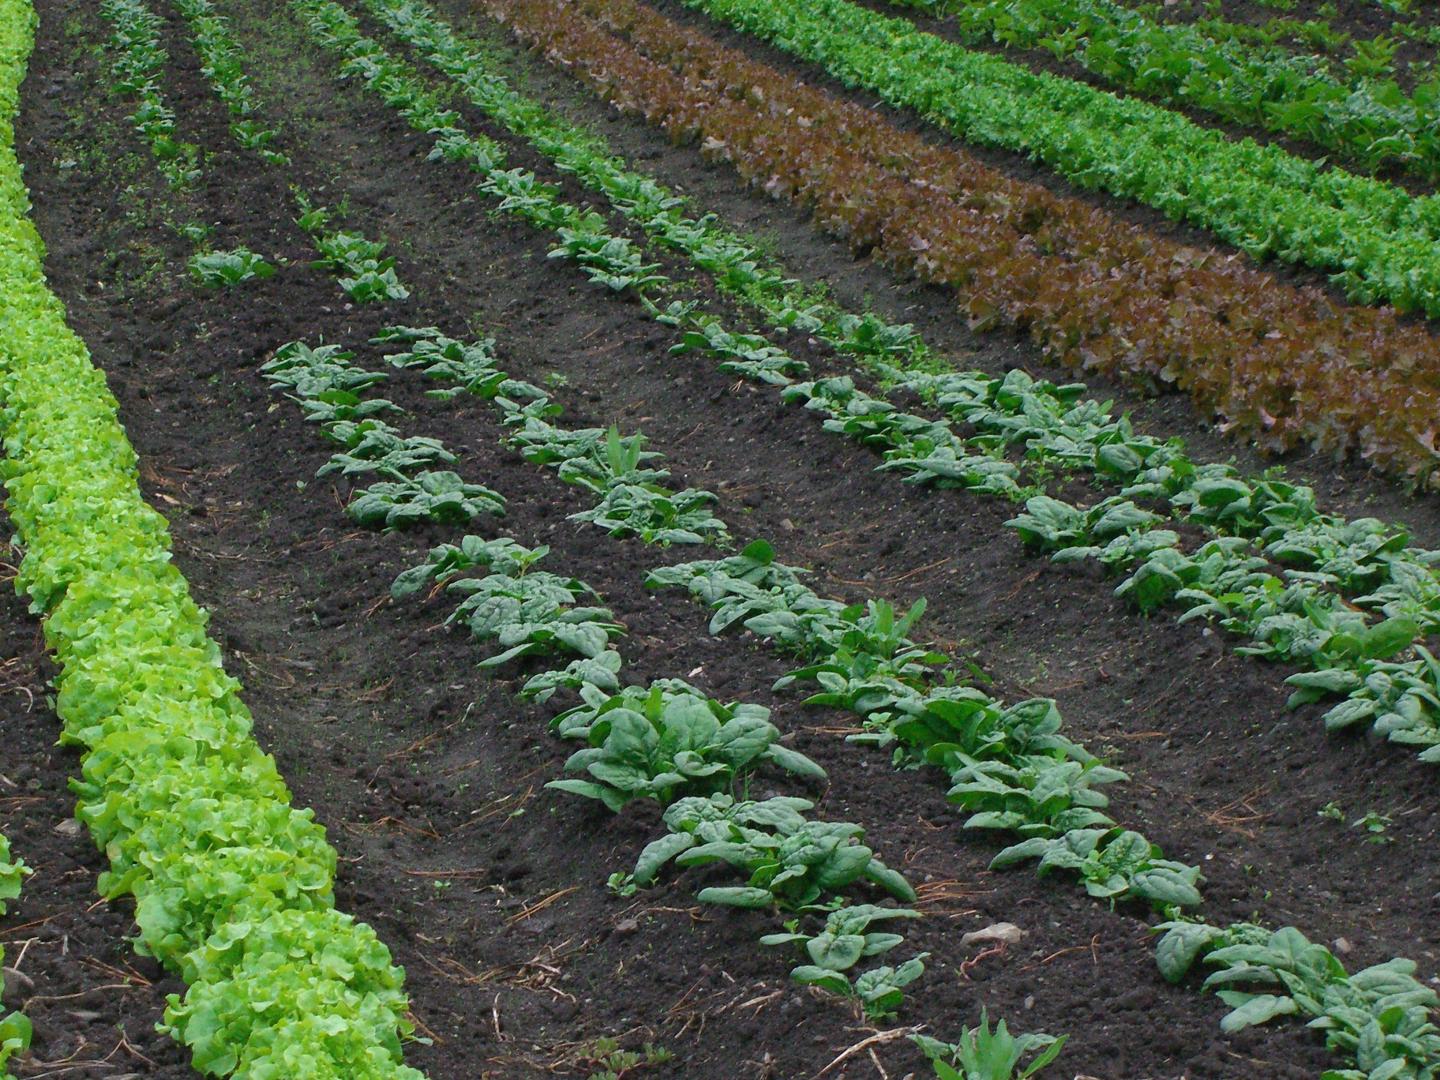 Lettuce rows